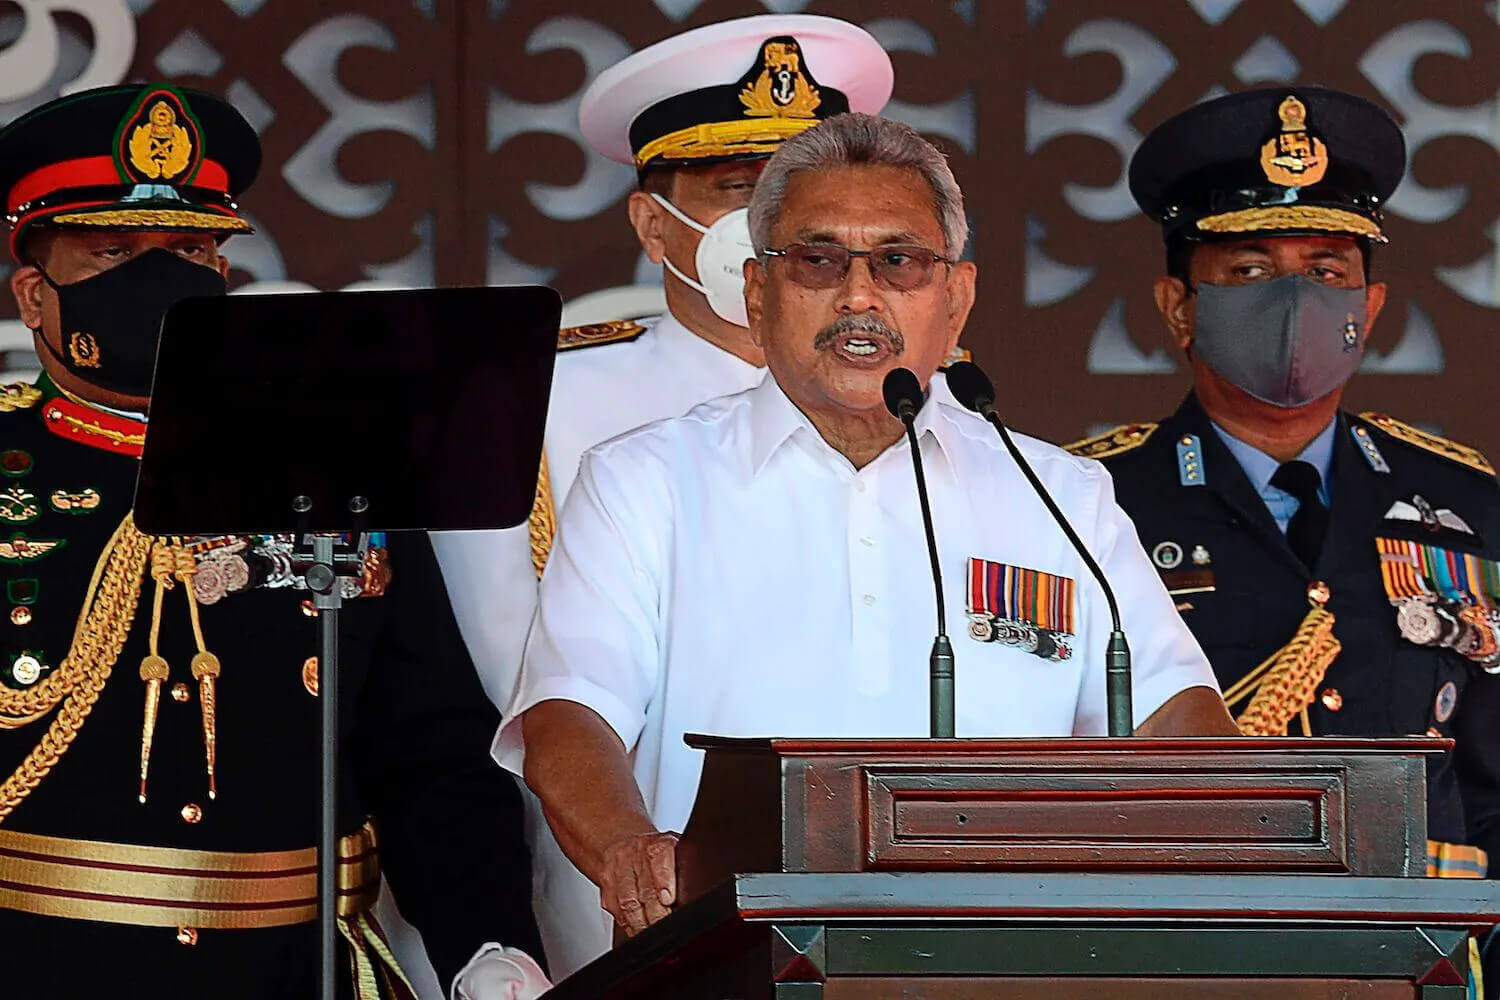 Rights Group Demands Arrest of Exiled Former Sri Lankan Pres. Rajapaksa Over War Crimes